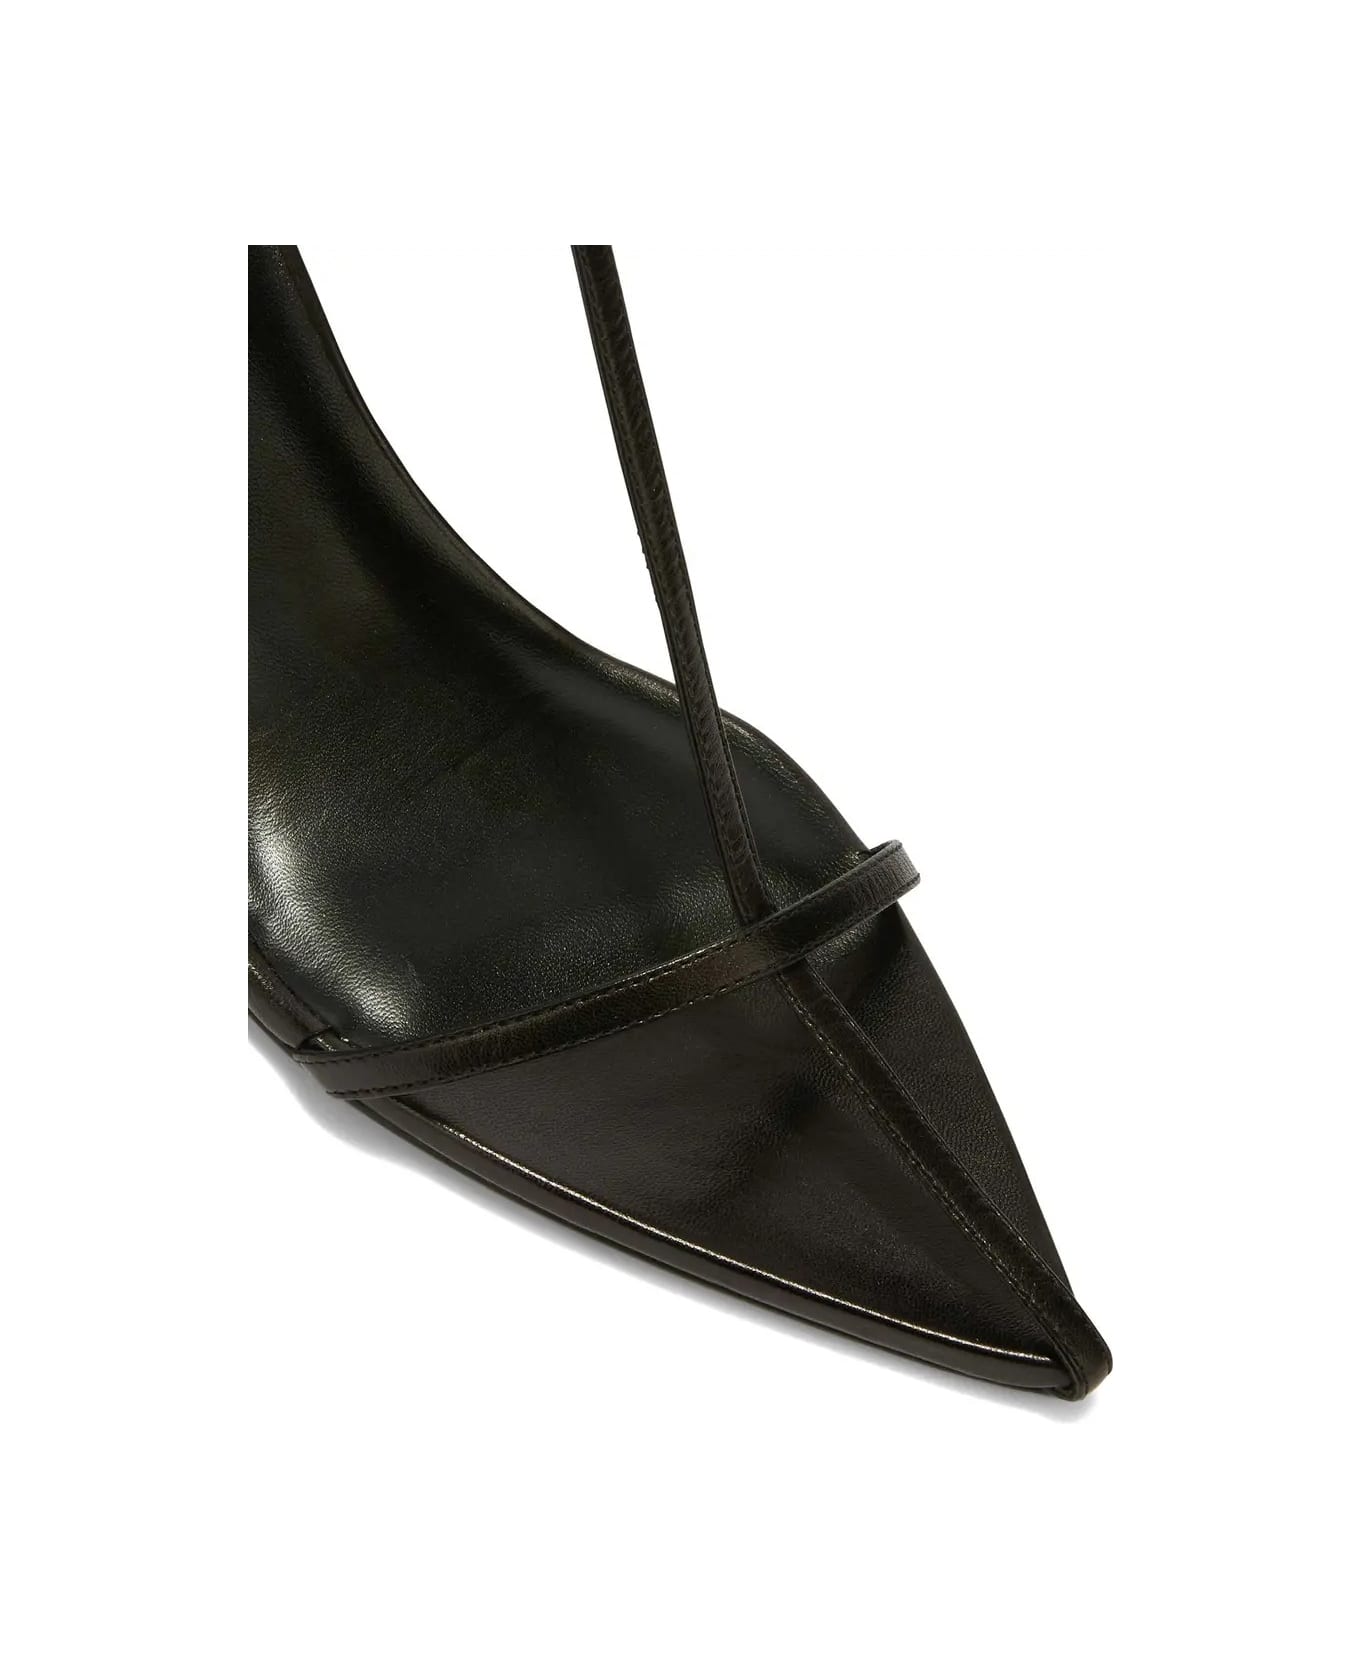 Jil Sander Black Leather Pointed Sandals With Straps - Black